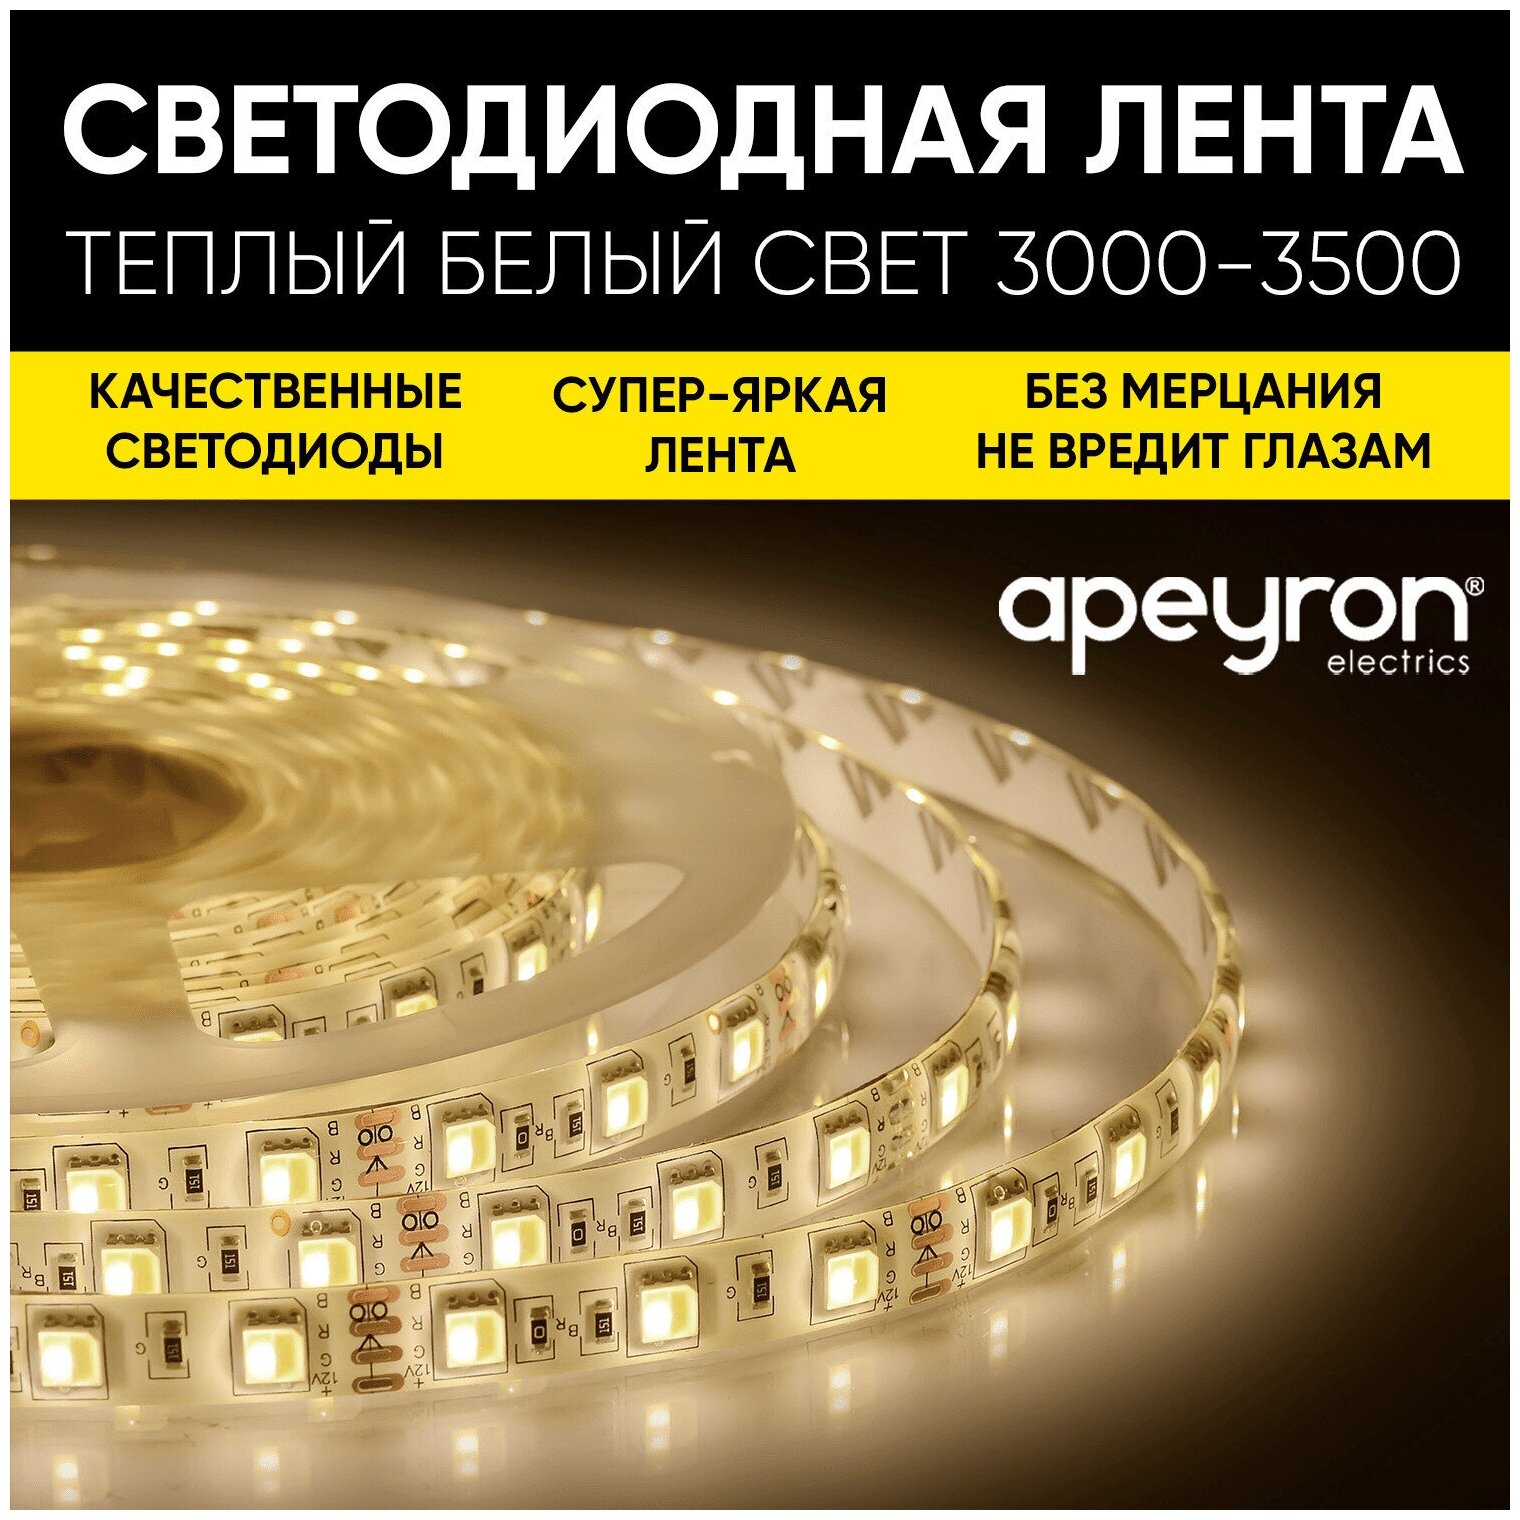 Комплект светодиодной ленты Apeyron SL-58 с напряжением 220В обладает теплым белым цветом свечения 3000К / 600Лм/м / 60д/м / 6Вт/м / smd2835 / IP65 / 5 метров